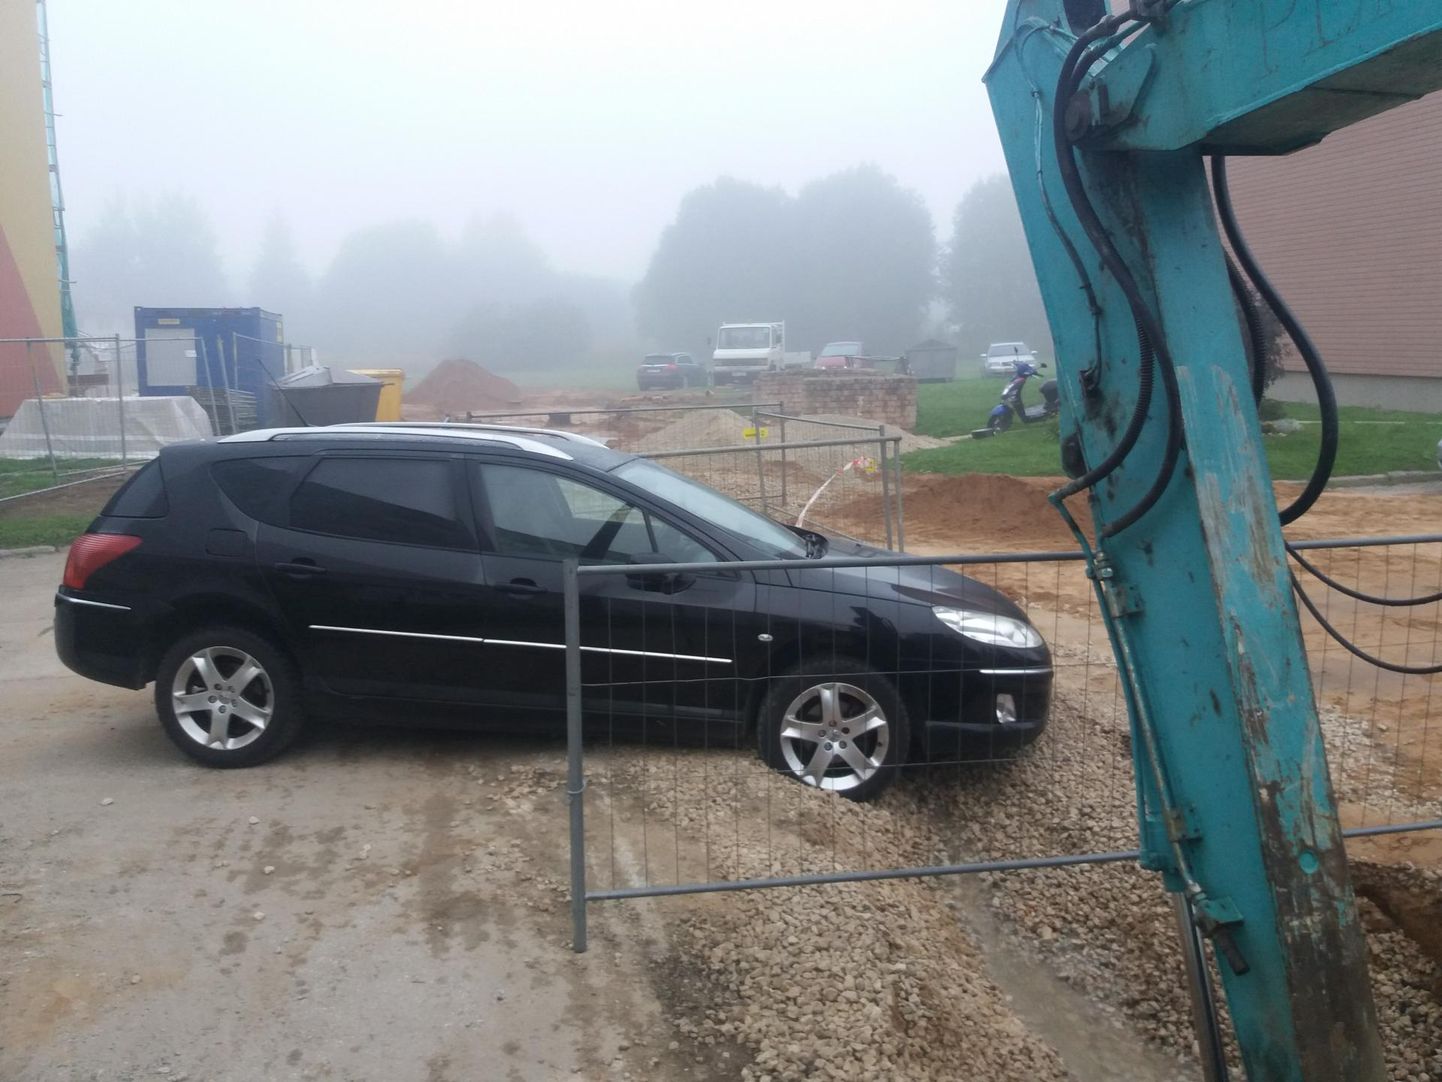 Eile hommikul seisis Peugeot 407 Männimäe teel nina peal kinni. Killustikuga täidetud koht, kus töömehed olid kaevanud, oli torulekke tõttu muutunud kraaviks. Kui Sakala ajakirjanik autot märkas, polnud selle juures kedagi.